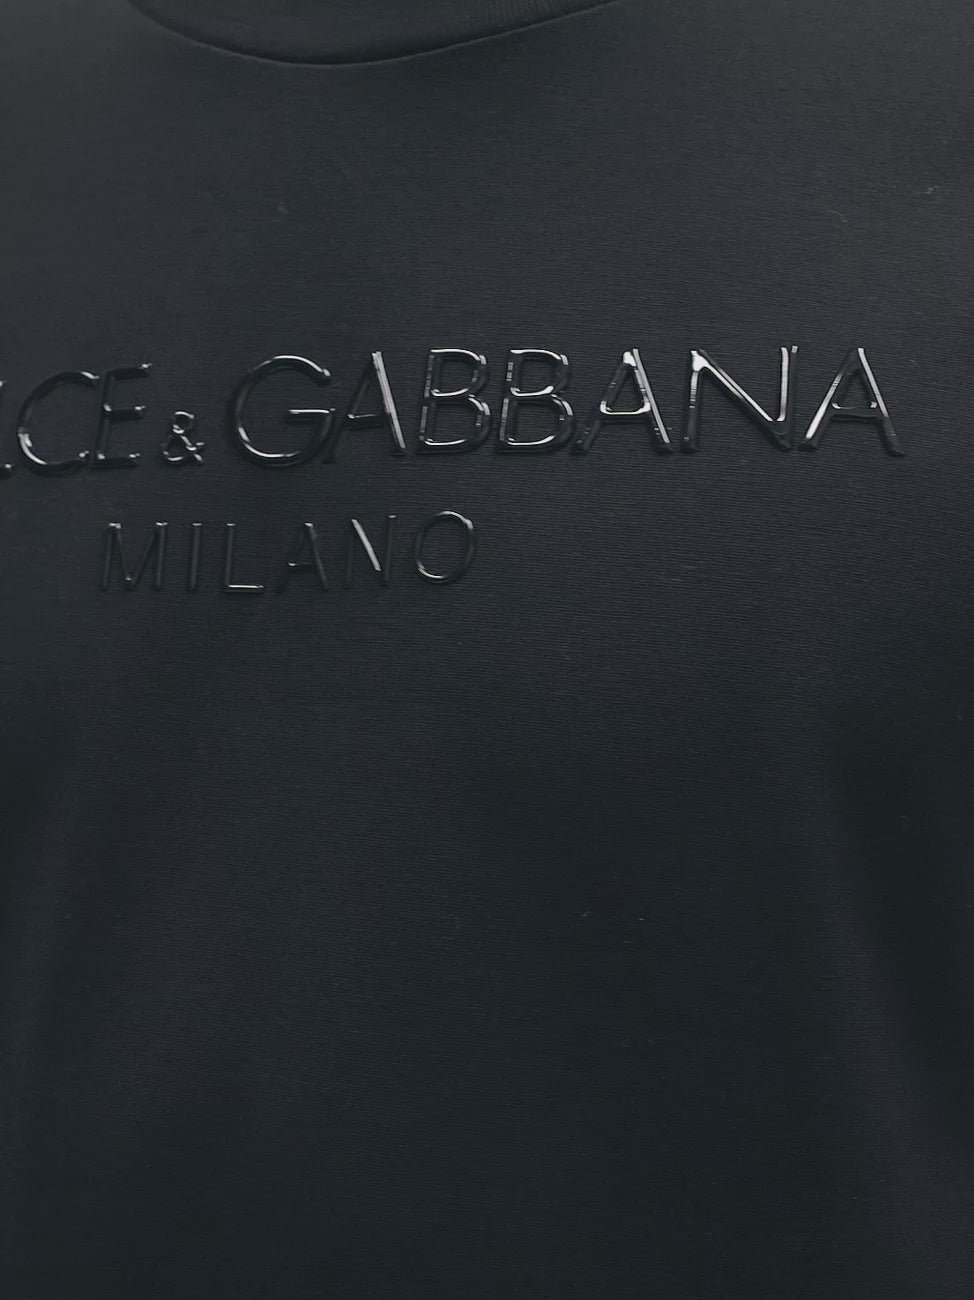 דולצ'ה גאבנה טי שירט צבע שחור Printed T-shirt